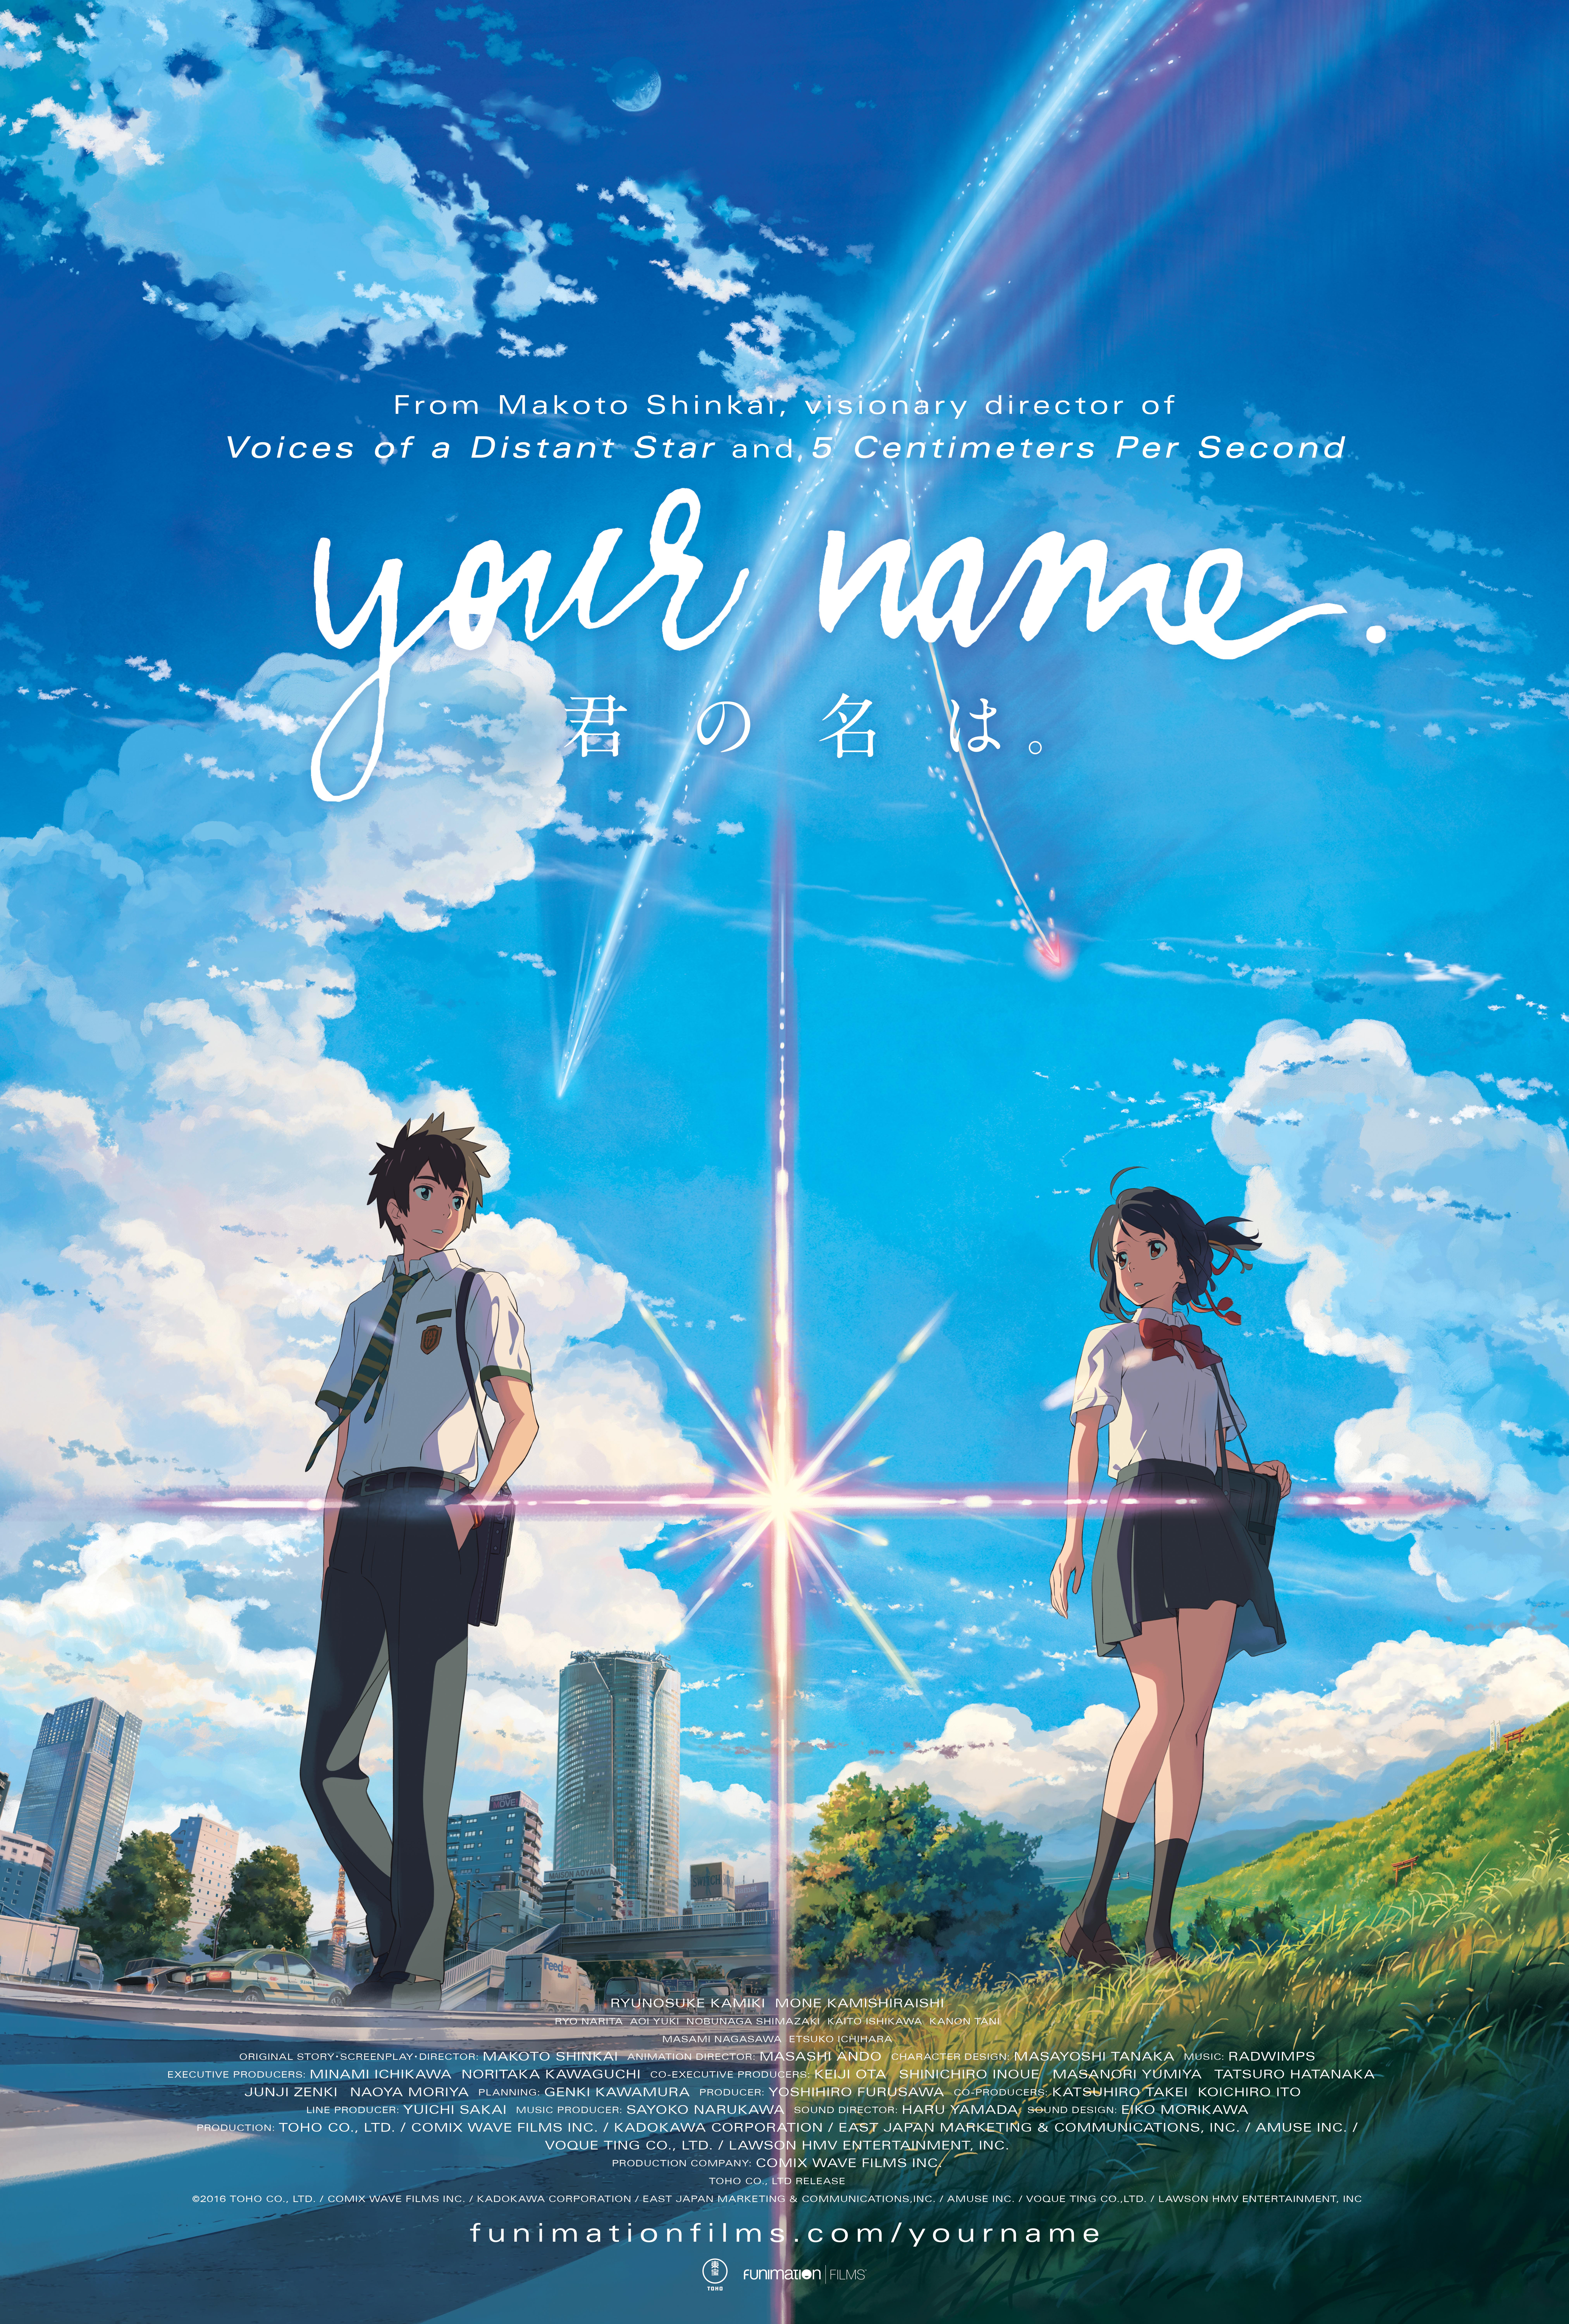 دانلود فیلم Your Name 2016